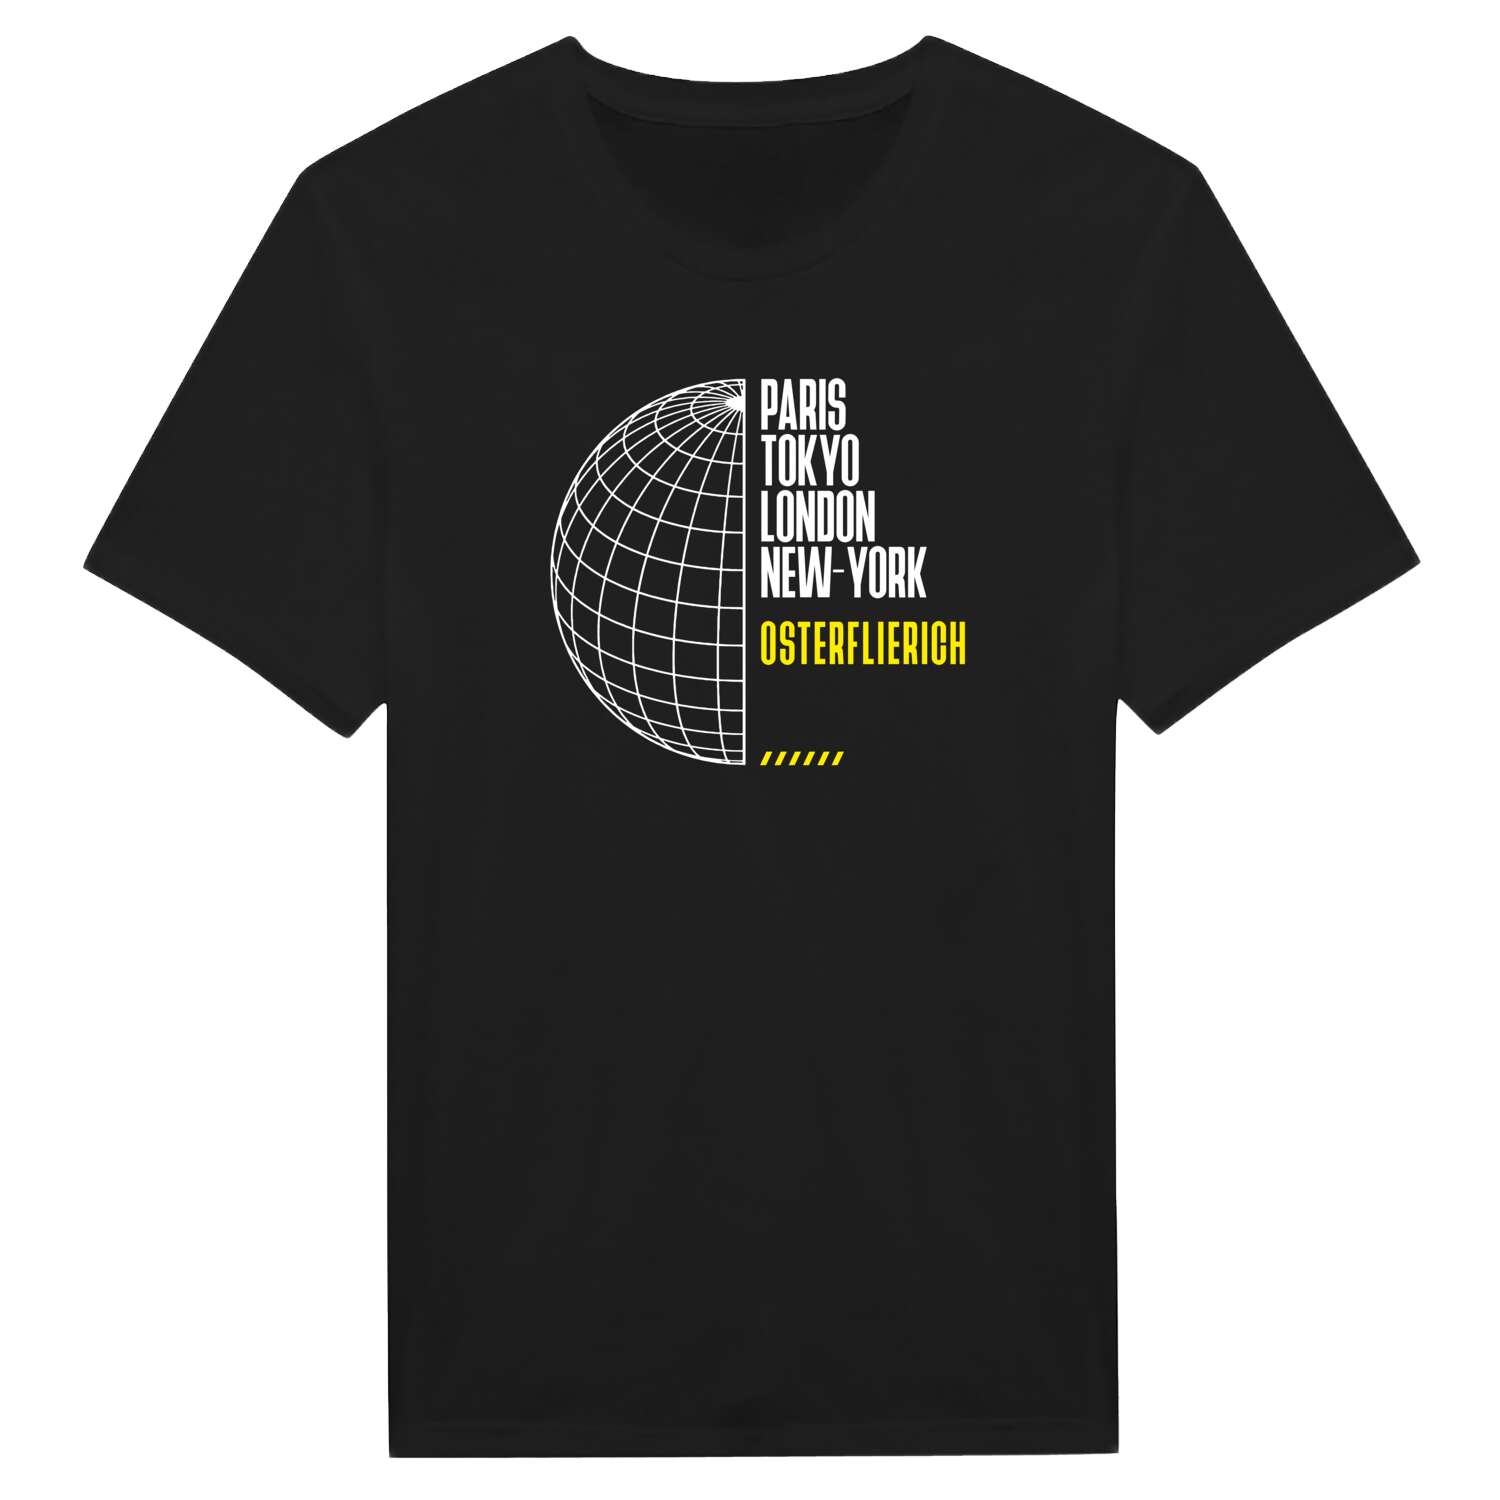 Osterflierich T-Shirt »Paris Tokyo London«